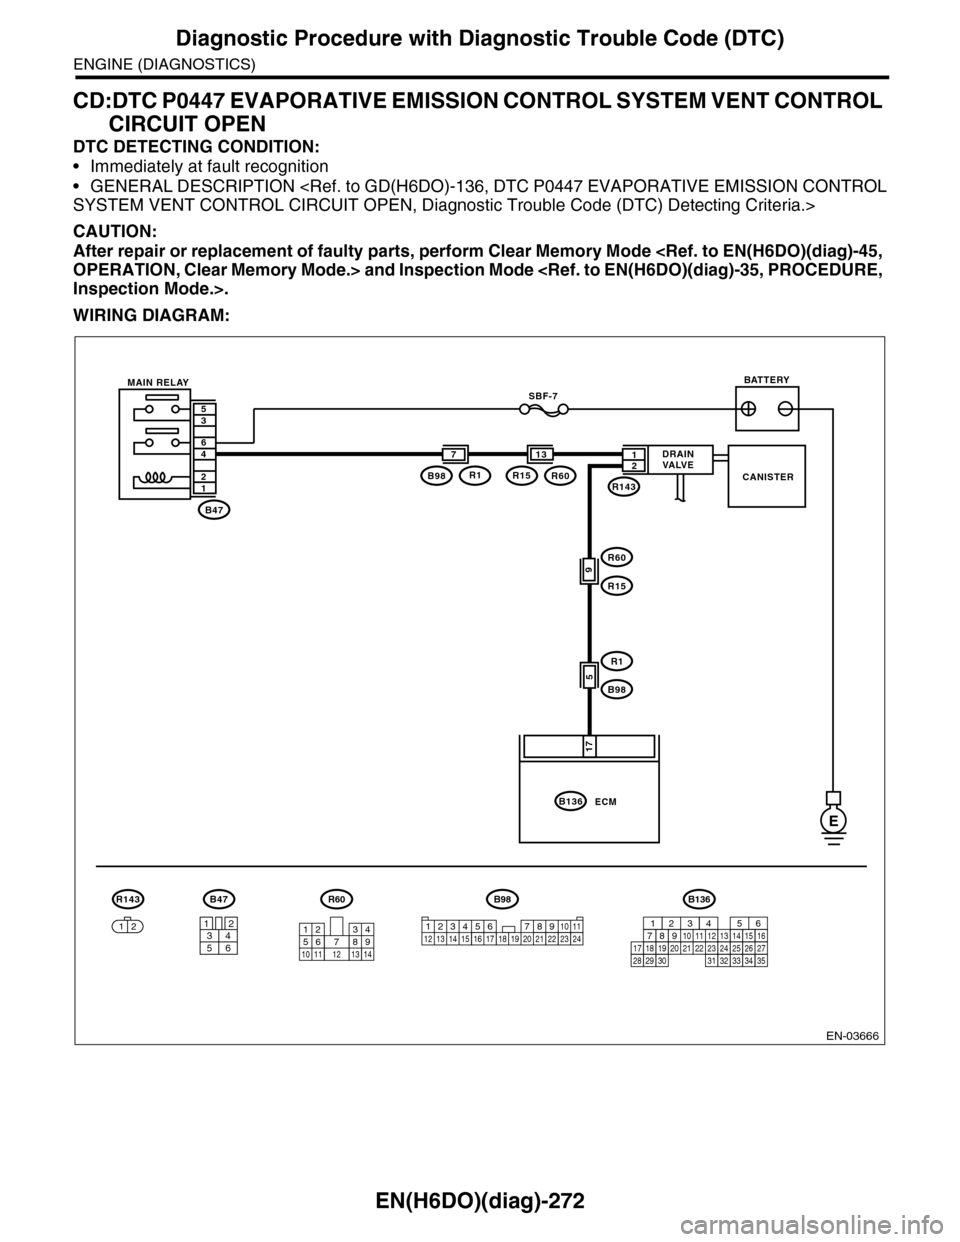 SUBARU TRIBECA 2009 1.G Service Workshop Manual EN(H6DO)(diag)-272
Diagnostic Procedure with Diagnostic Trouble Code (DTC)
ENGINE (DIAGNOSTICS)
CD:DTC P0447 EVAPORATIVE EMISSION CONTROL SYSTEM VENT CONTROL 
CIRCUIT OPEN
DTC DETECTING CONDITION:
•